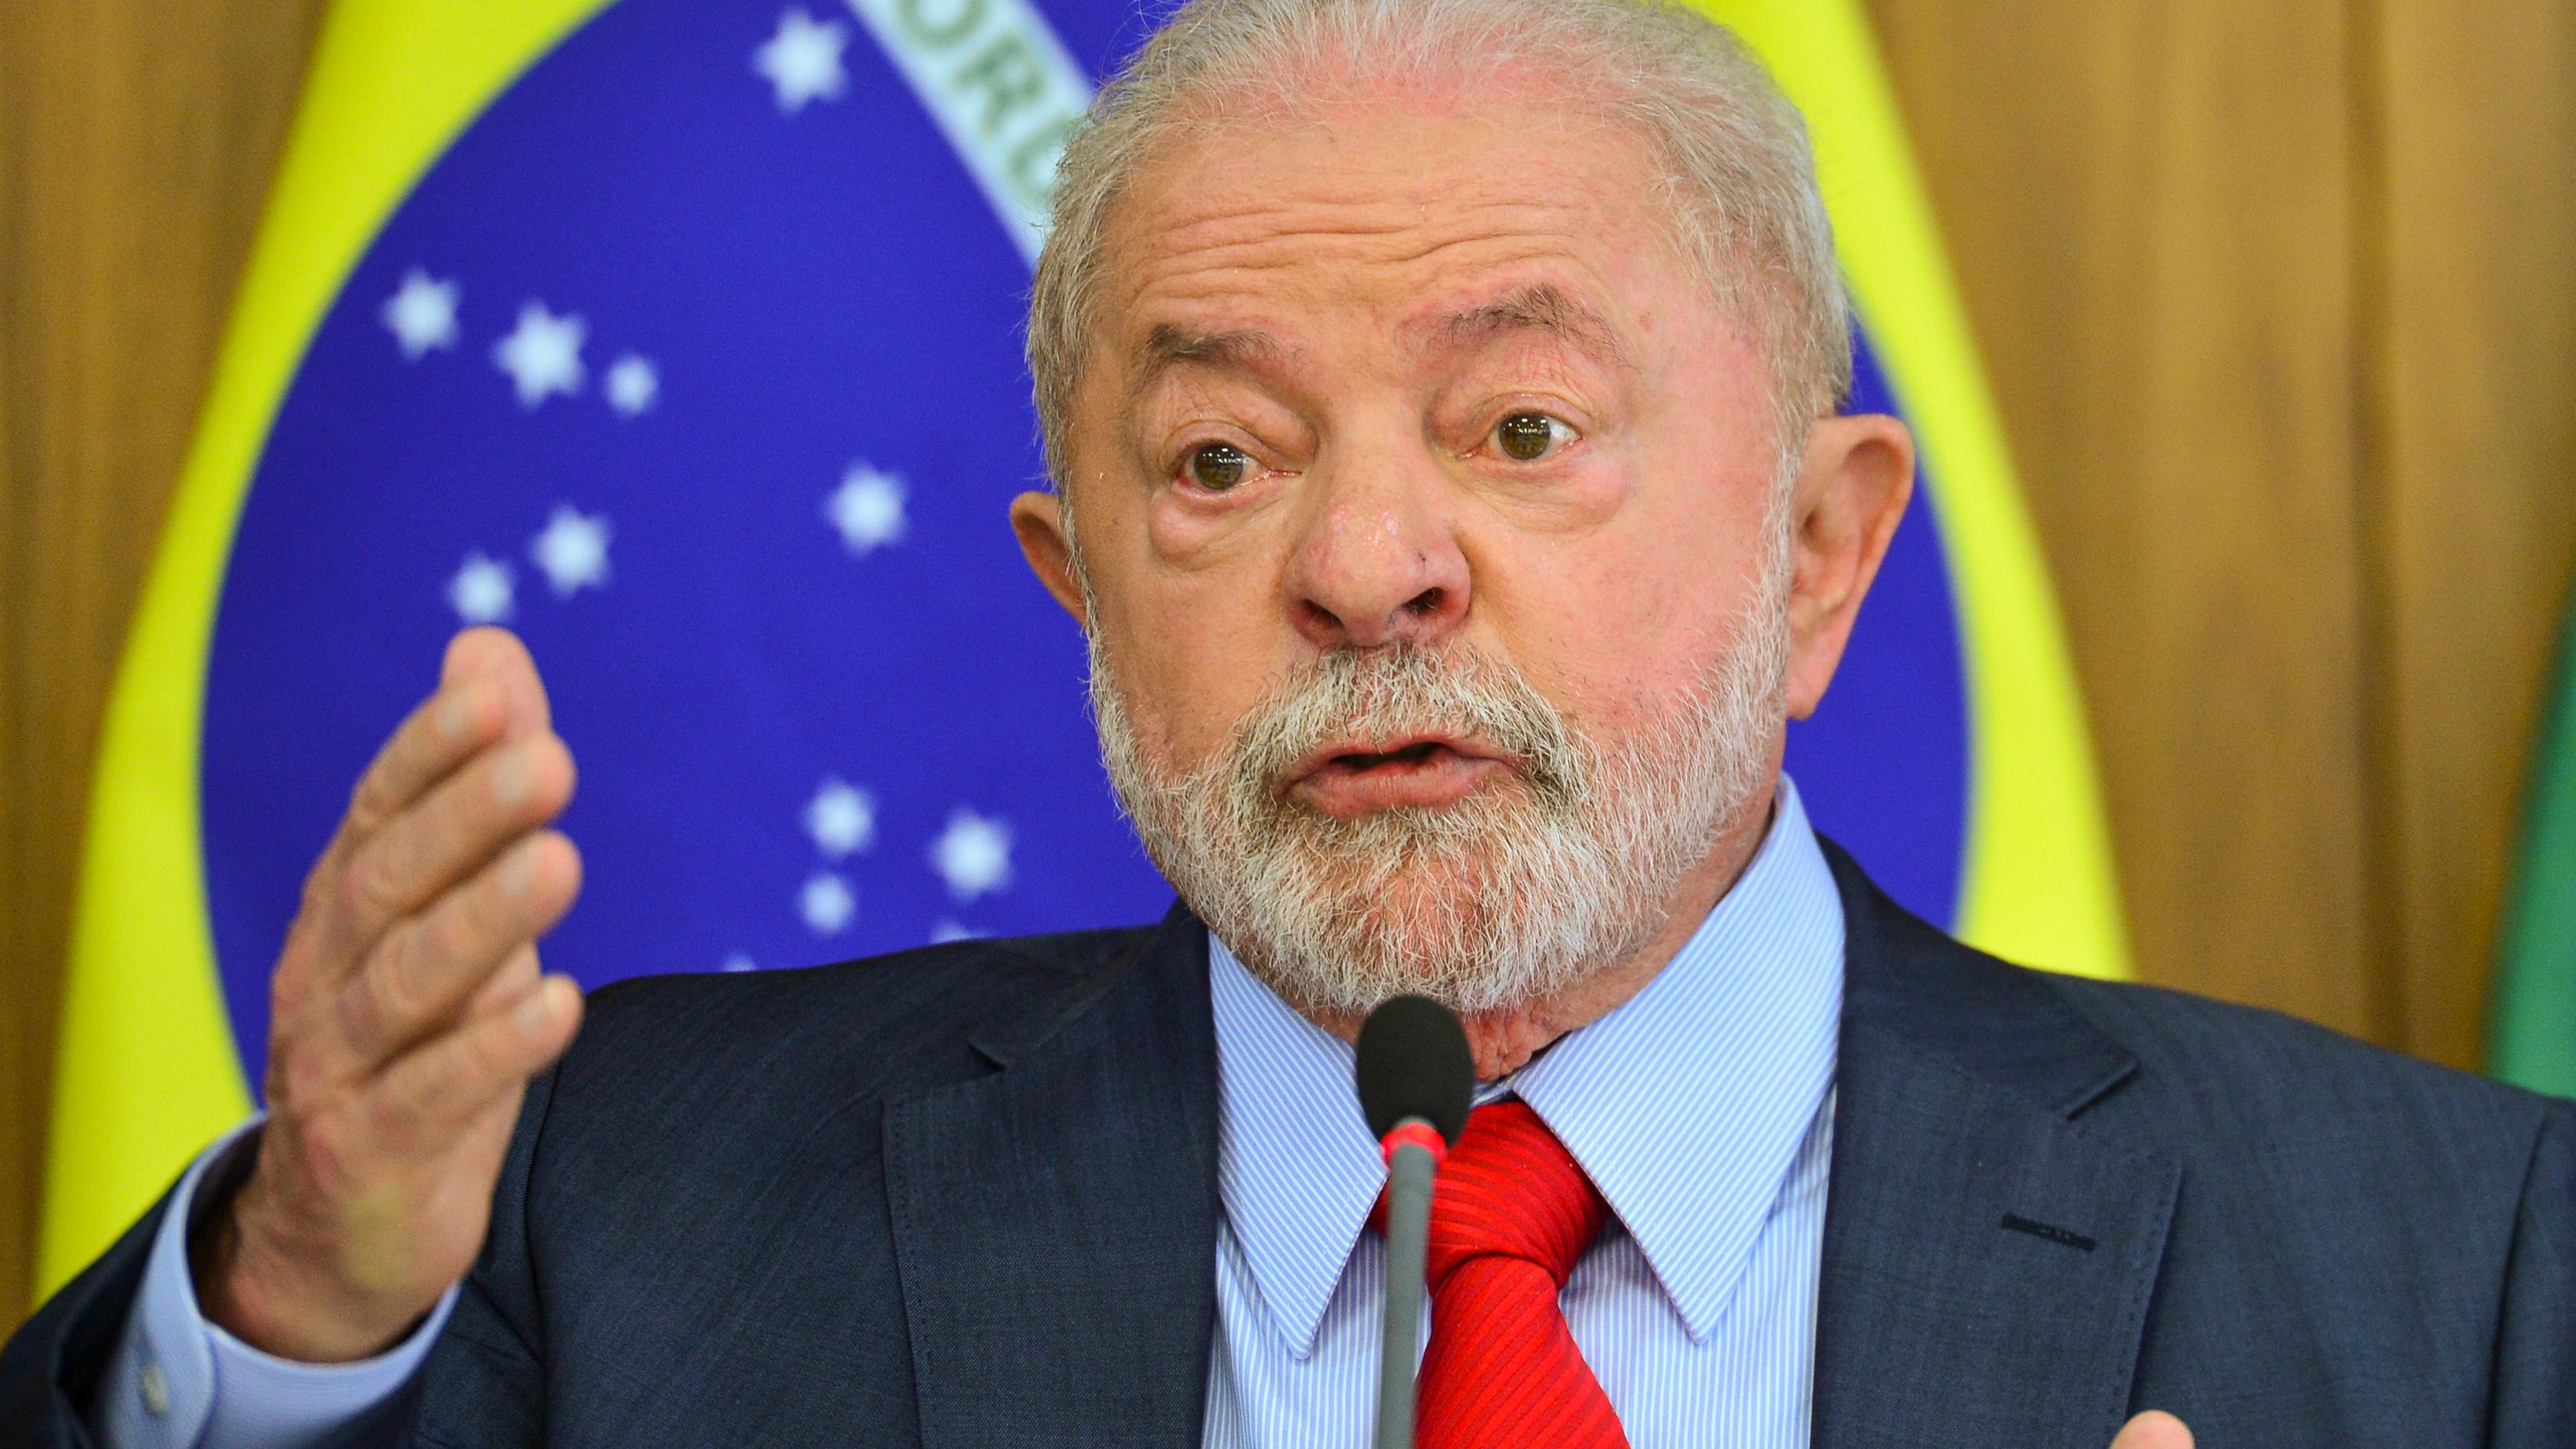 Das Bild zeigt Luiz Inacio Lula da Silva, Präsident von Brasilien, während er bei einem Treffen mit Journalisten im Planalto-Palast spricht.